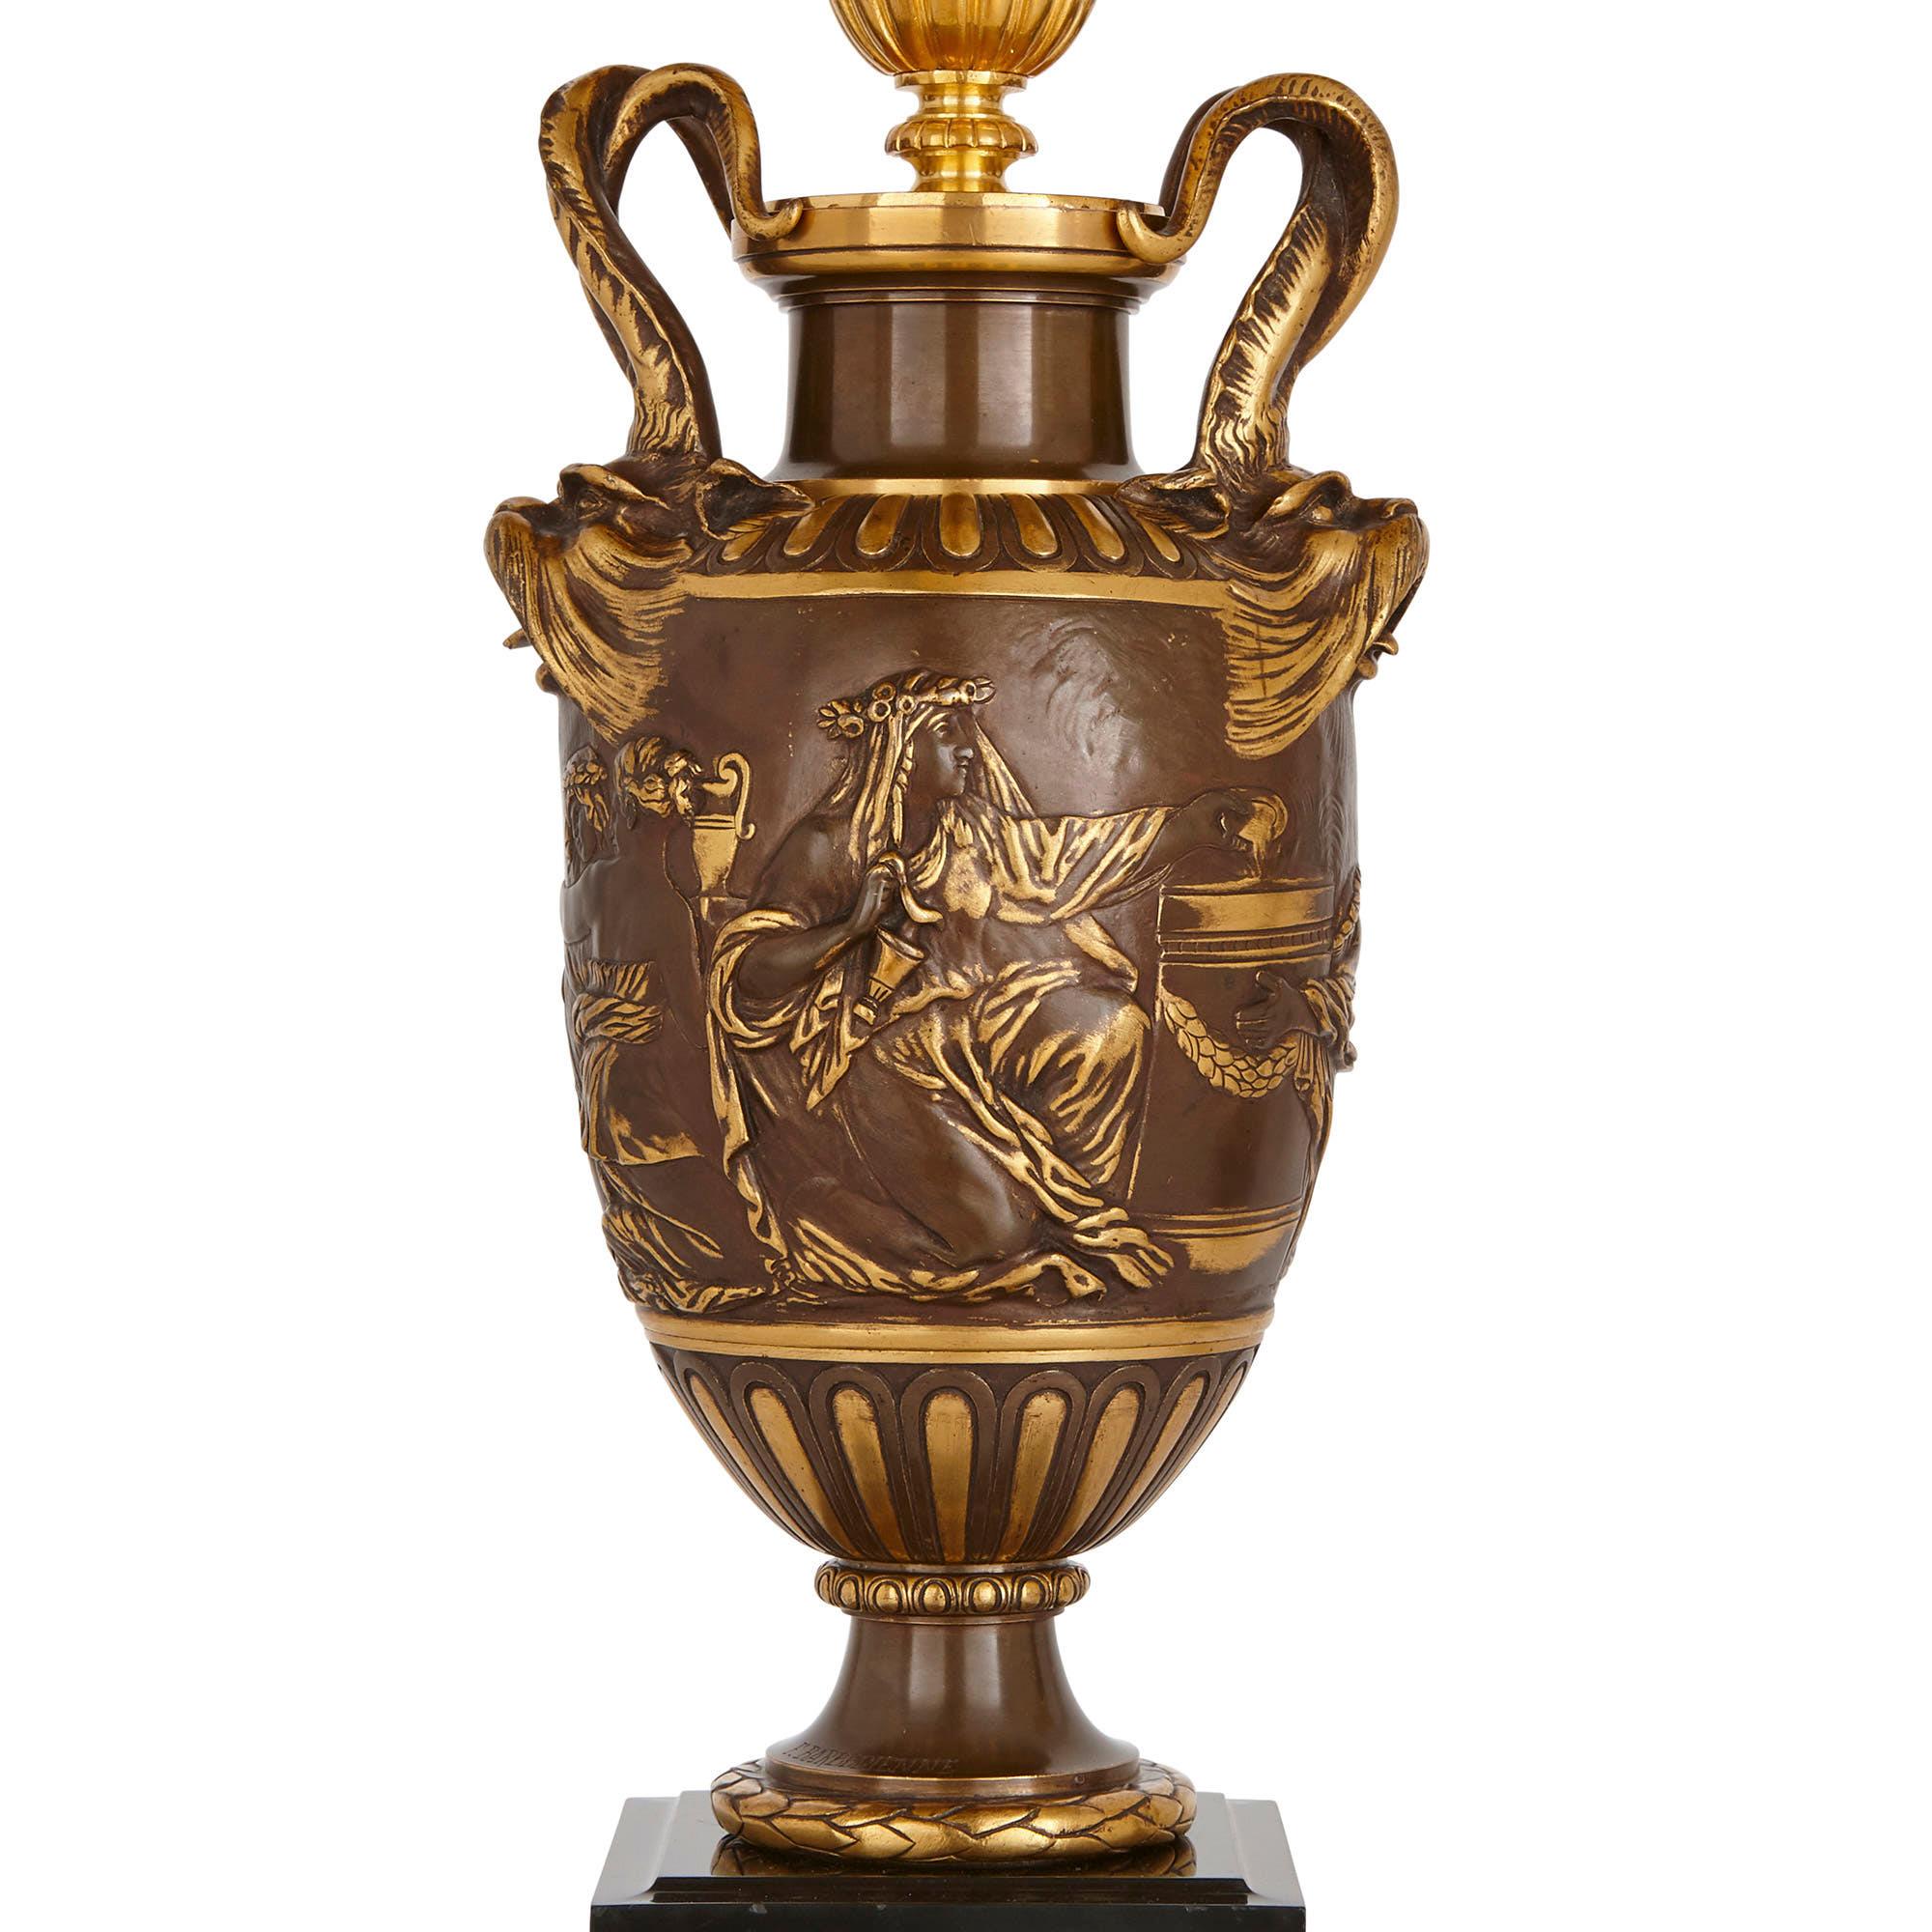 Die führende Bronzemanufaktur der französischen Belle Époque, Barbedienne, ist für das Design dieser exquisiten Kandelaber verantwortlich. Die Gießerei Barbedienne wurde 1838 von dem berühmten Bronzier Ferdinand Barbedienne gegründet. Die Firma